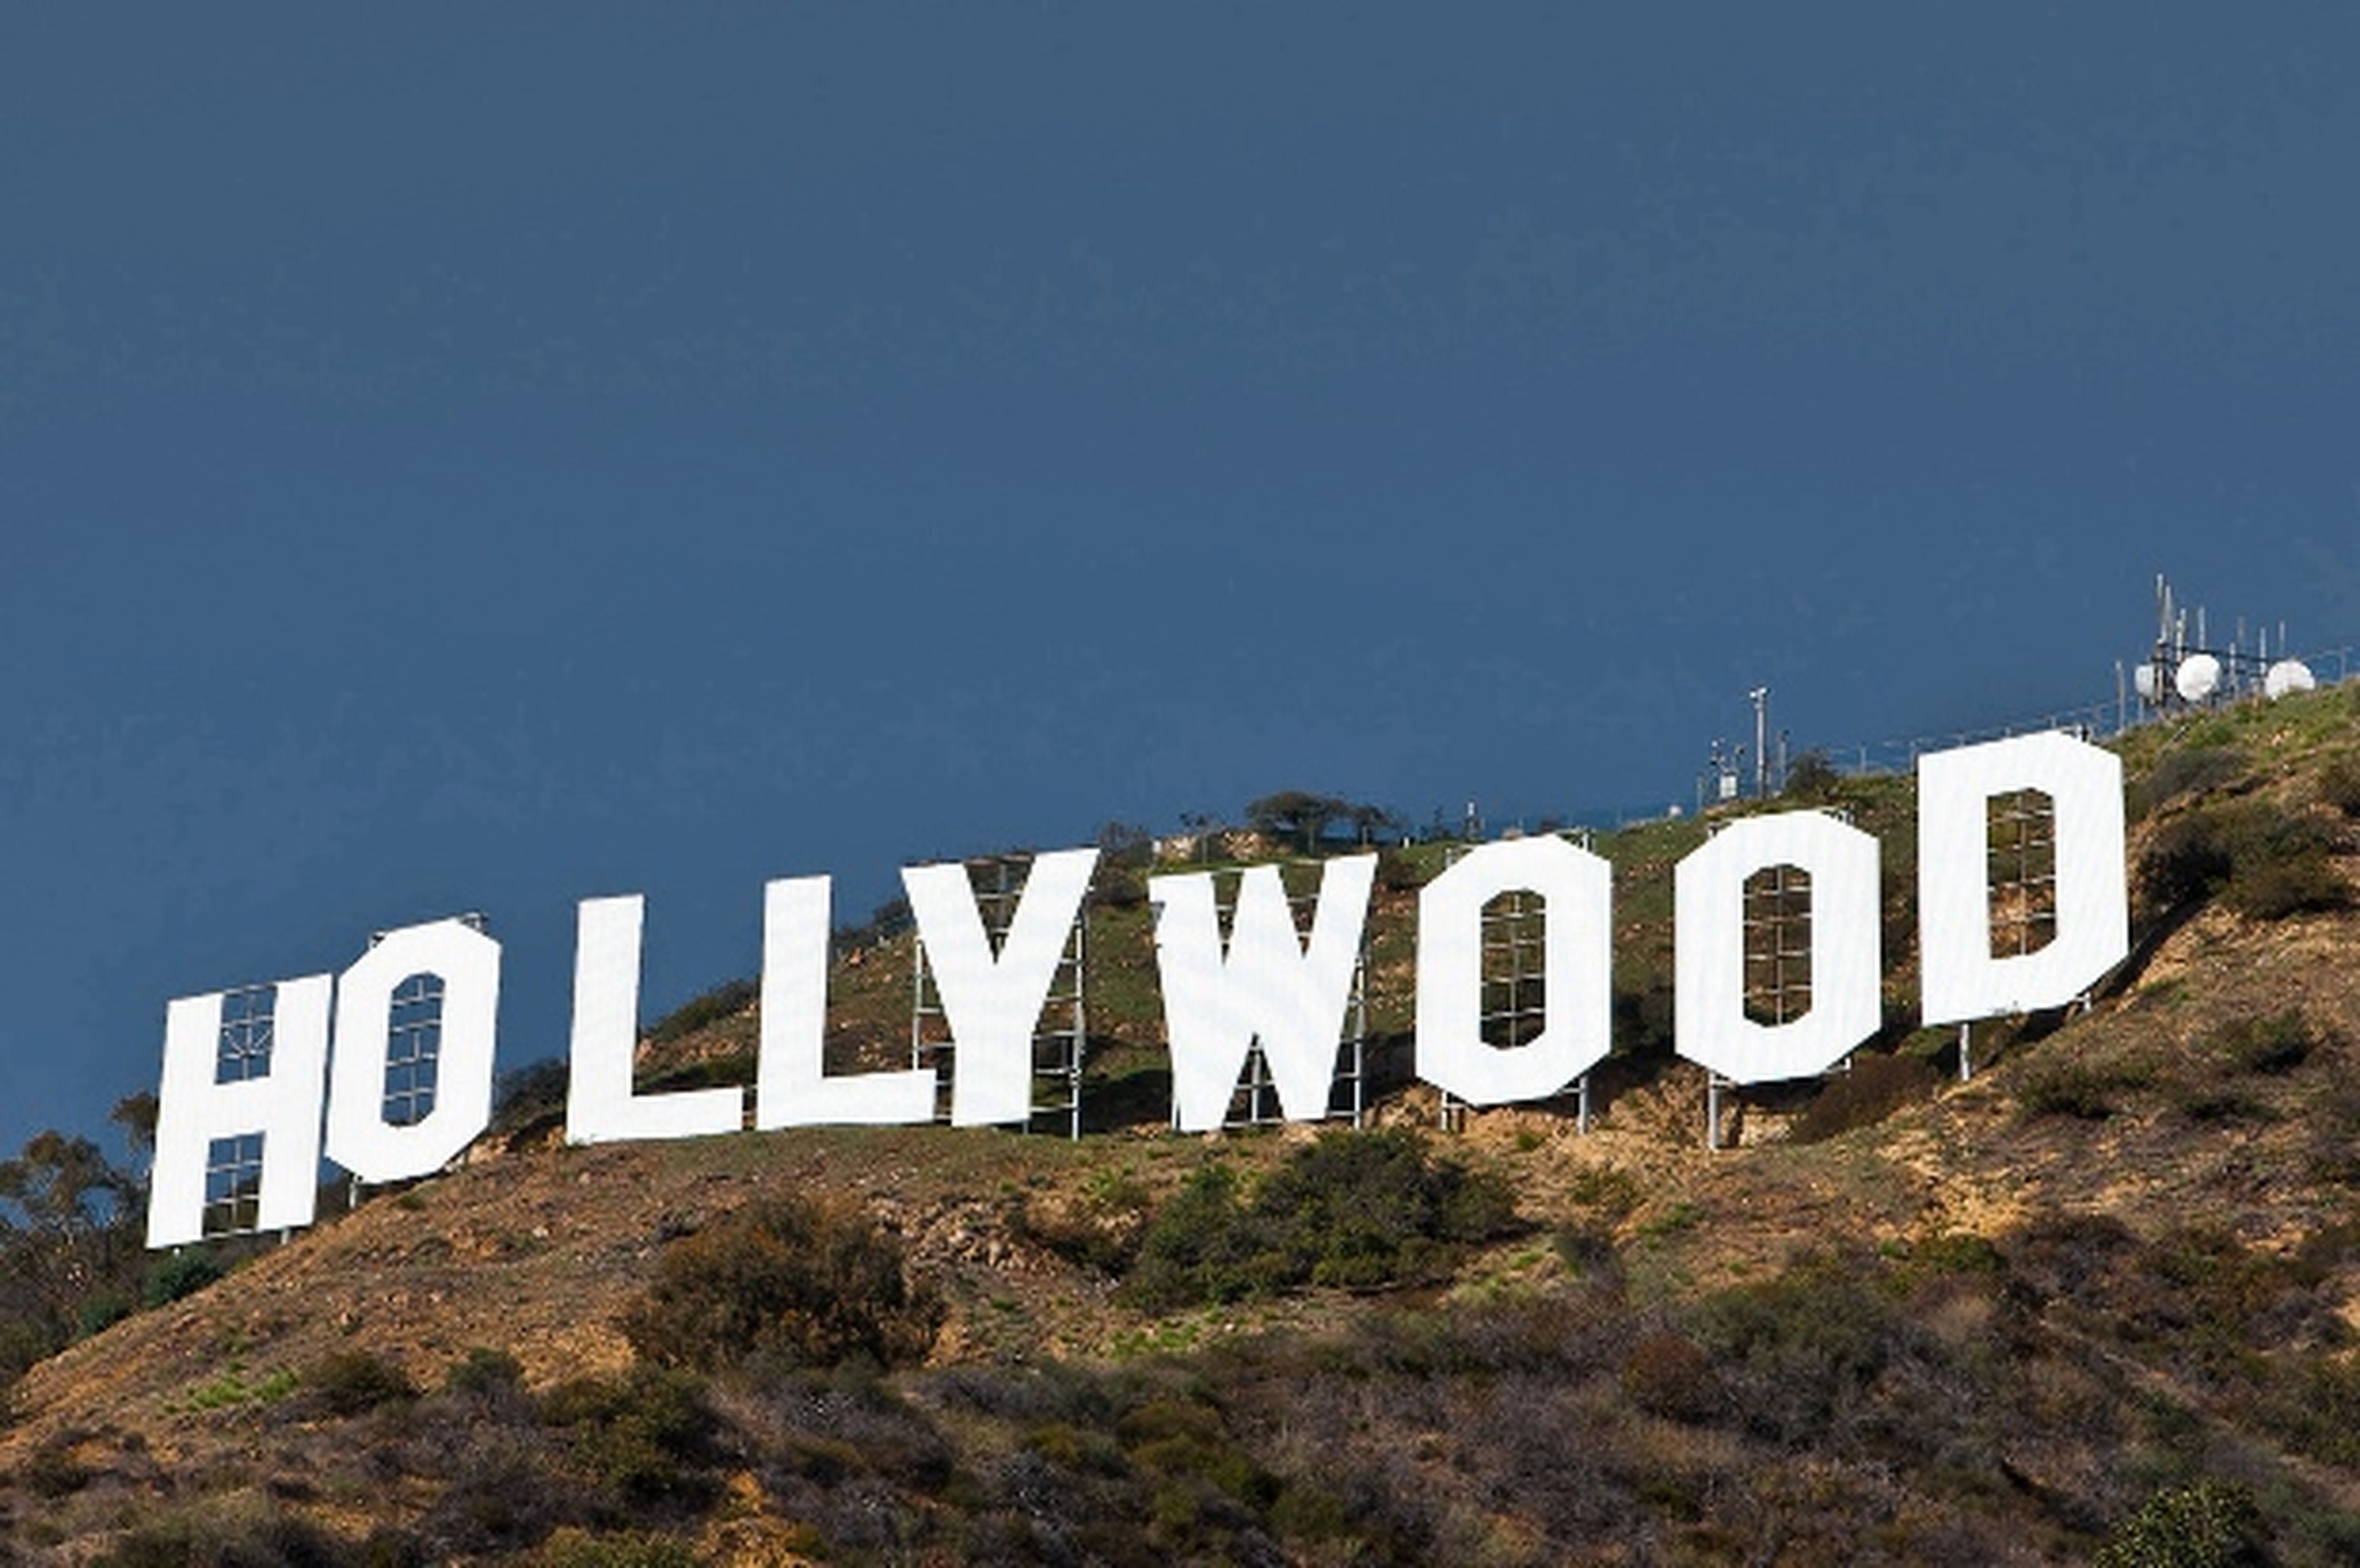 ¿Se filtran las películas de los estudios de Hollywood?